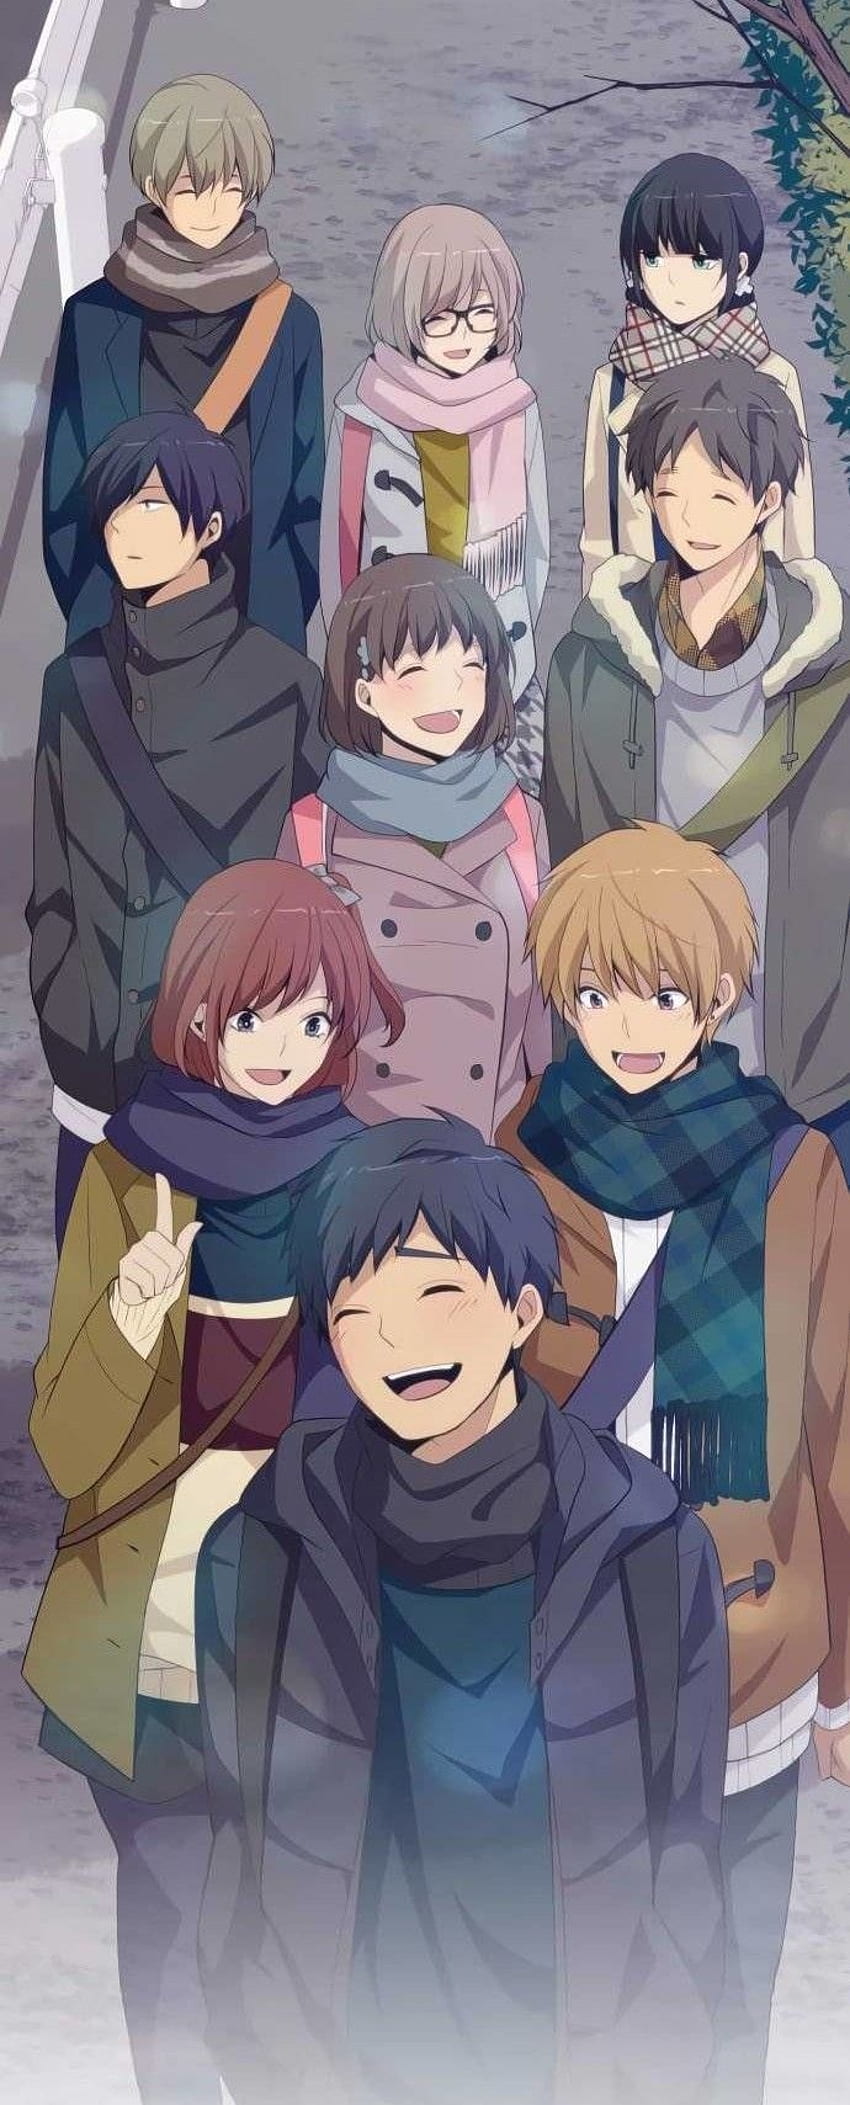 La même qu'avant mais en entière ❤️❤️. Anime group of friends, Romantic anime, Anime friendship, Anime Boys Group HD phone wallpaper